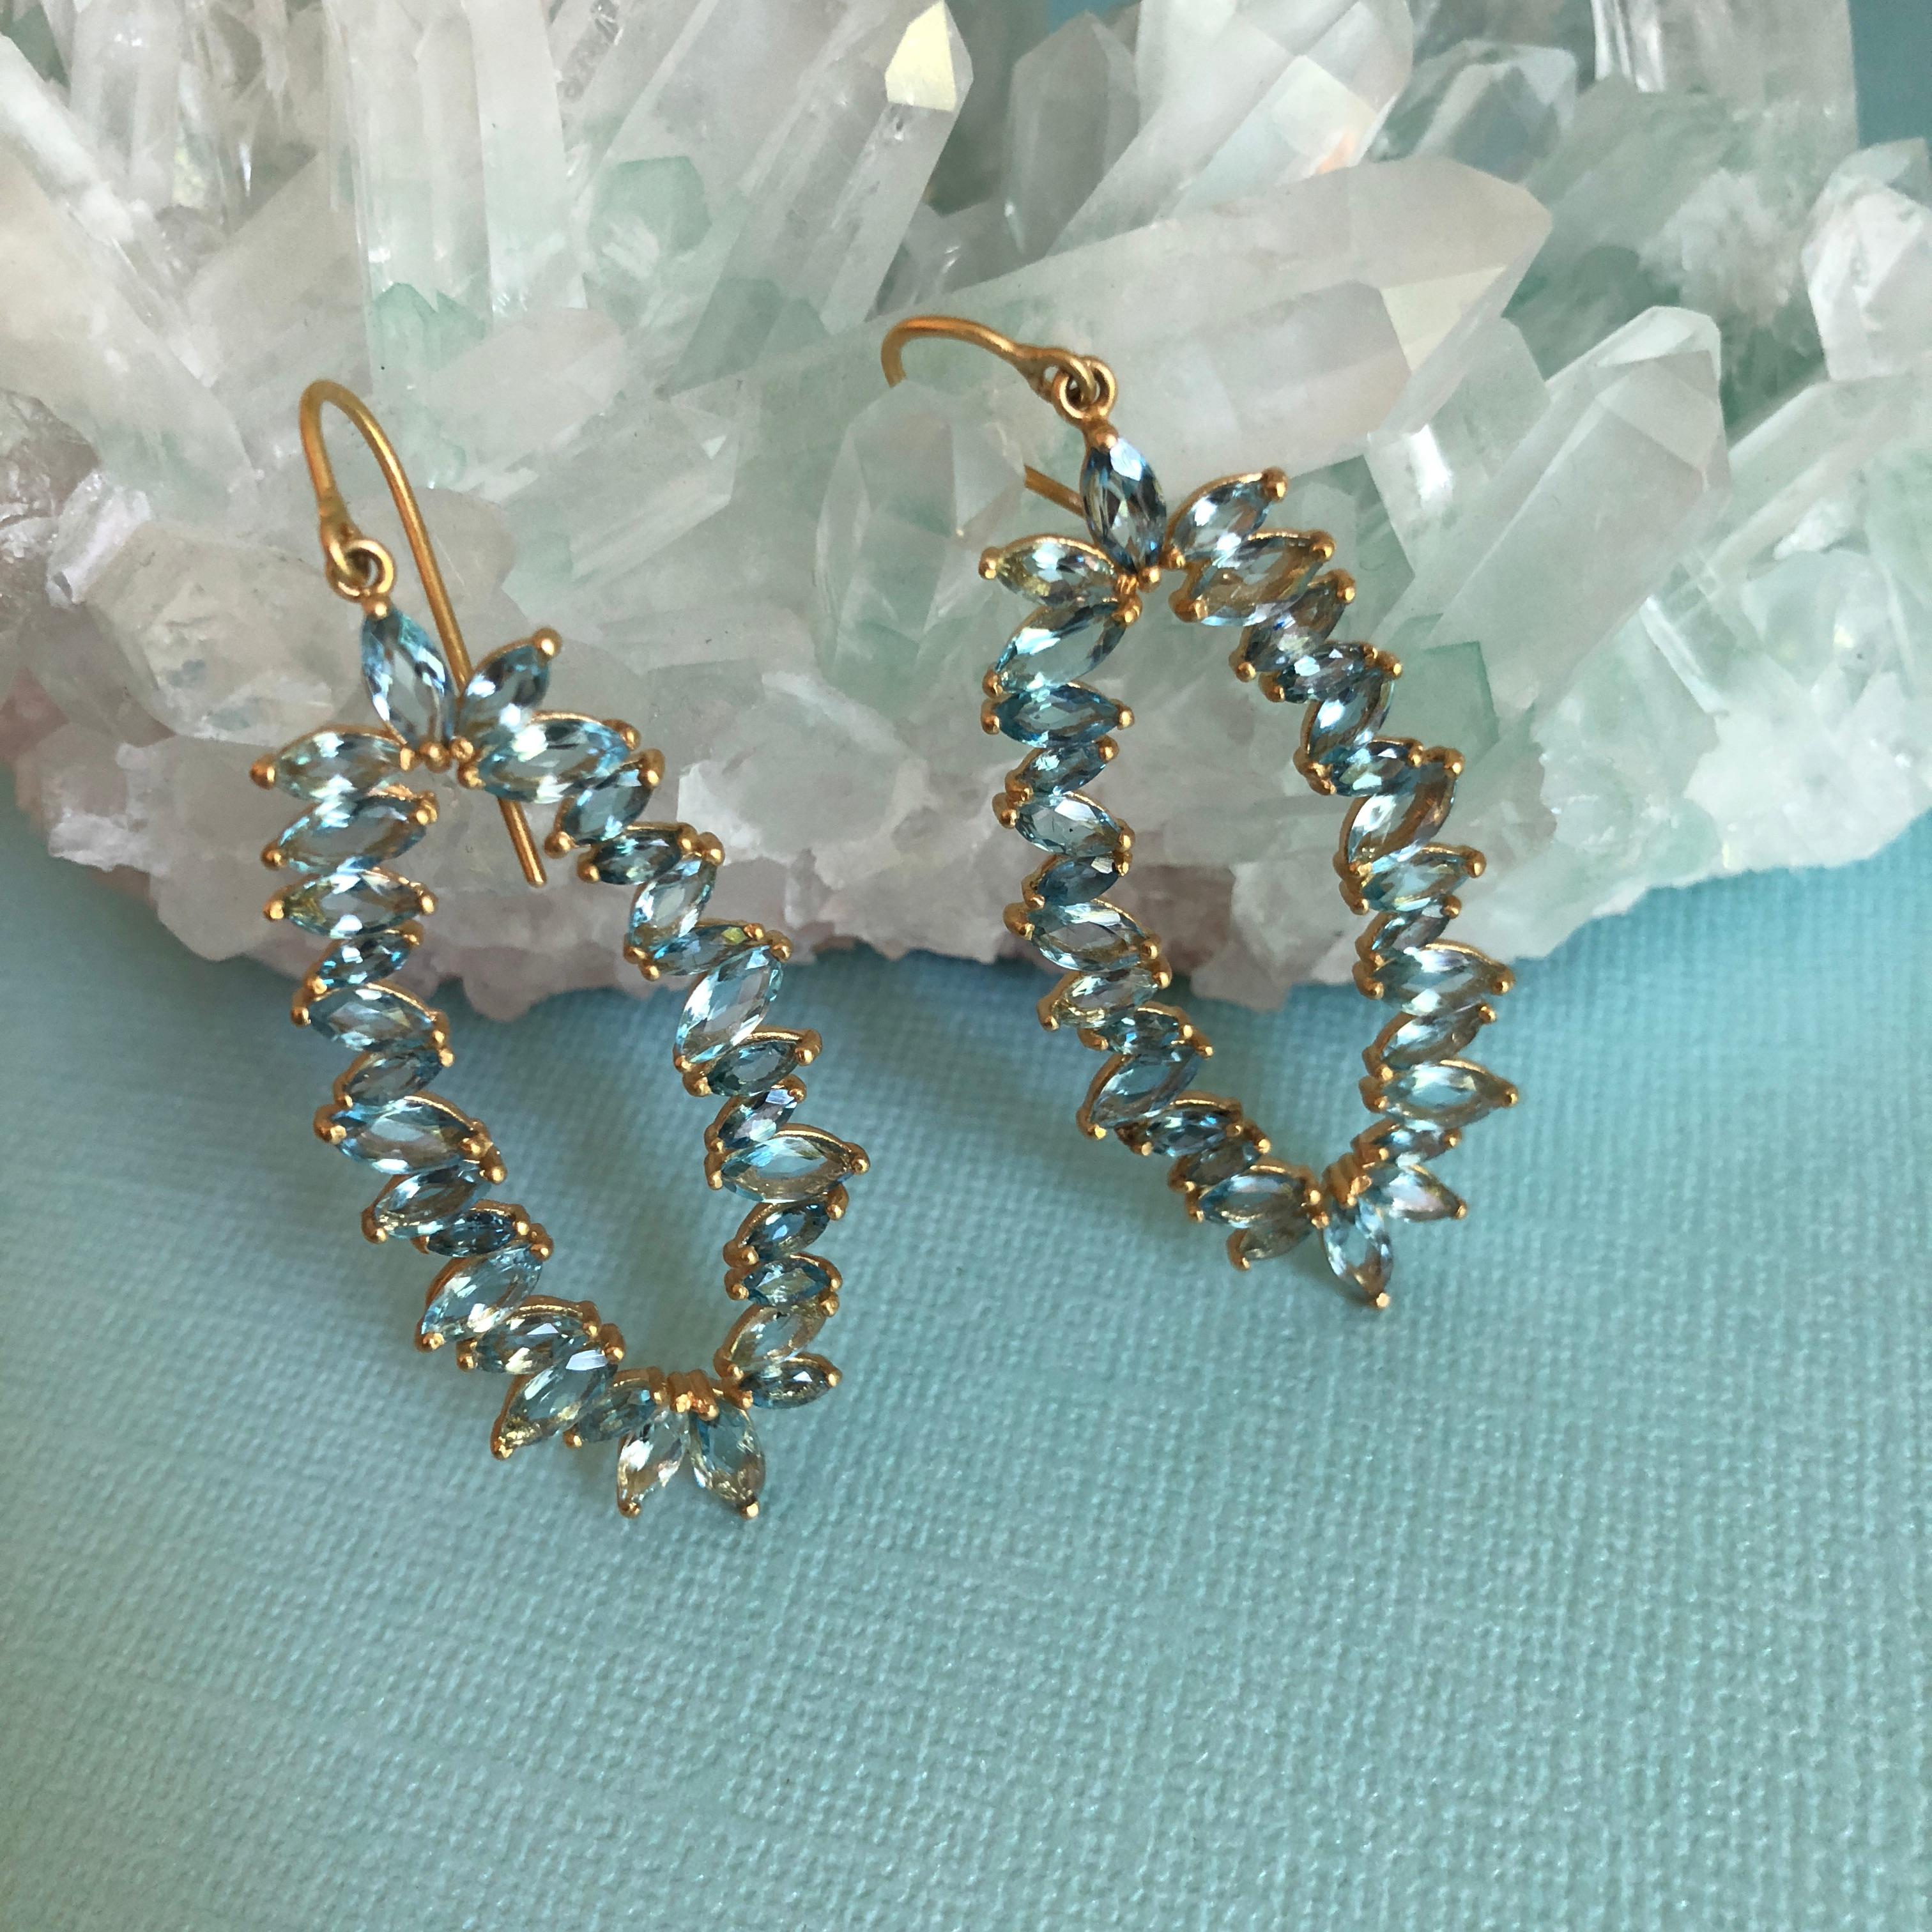 Diese brillantblauen 7,33 Karat Aquamarine in Marquisform sind in einer fast unsichtbaren Zackenfassung gefasst, so dass die Steine in Ihren Ohren funkeln und schillern.  Diese Ohrringe sind aus 18-karätigem Gold gefertigt und in der Mitte offen.